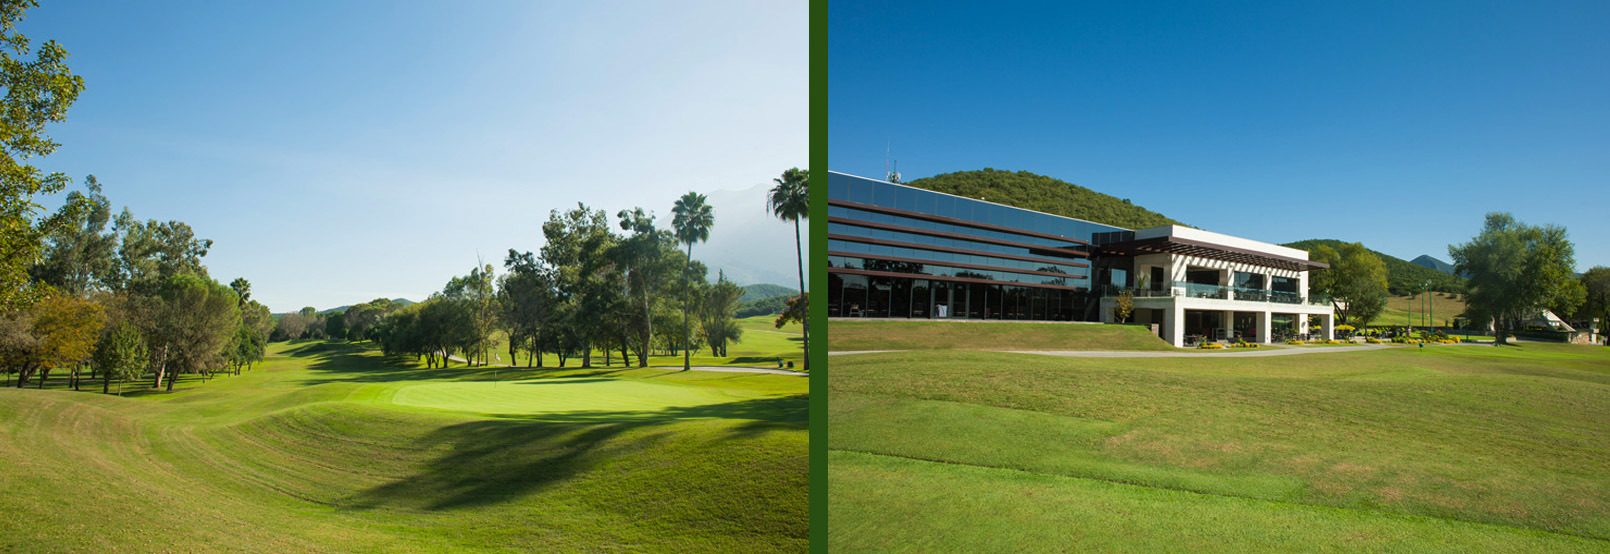 Club de Golf Valle Alto